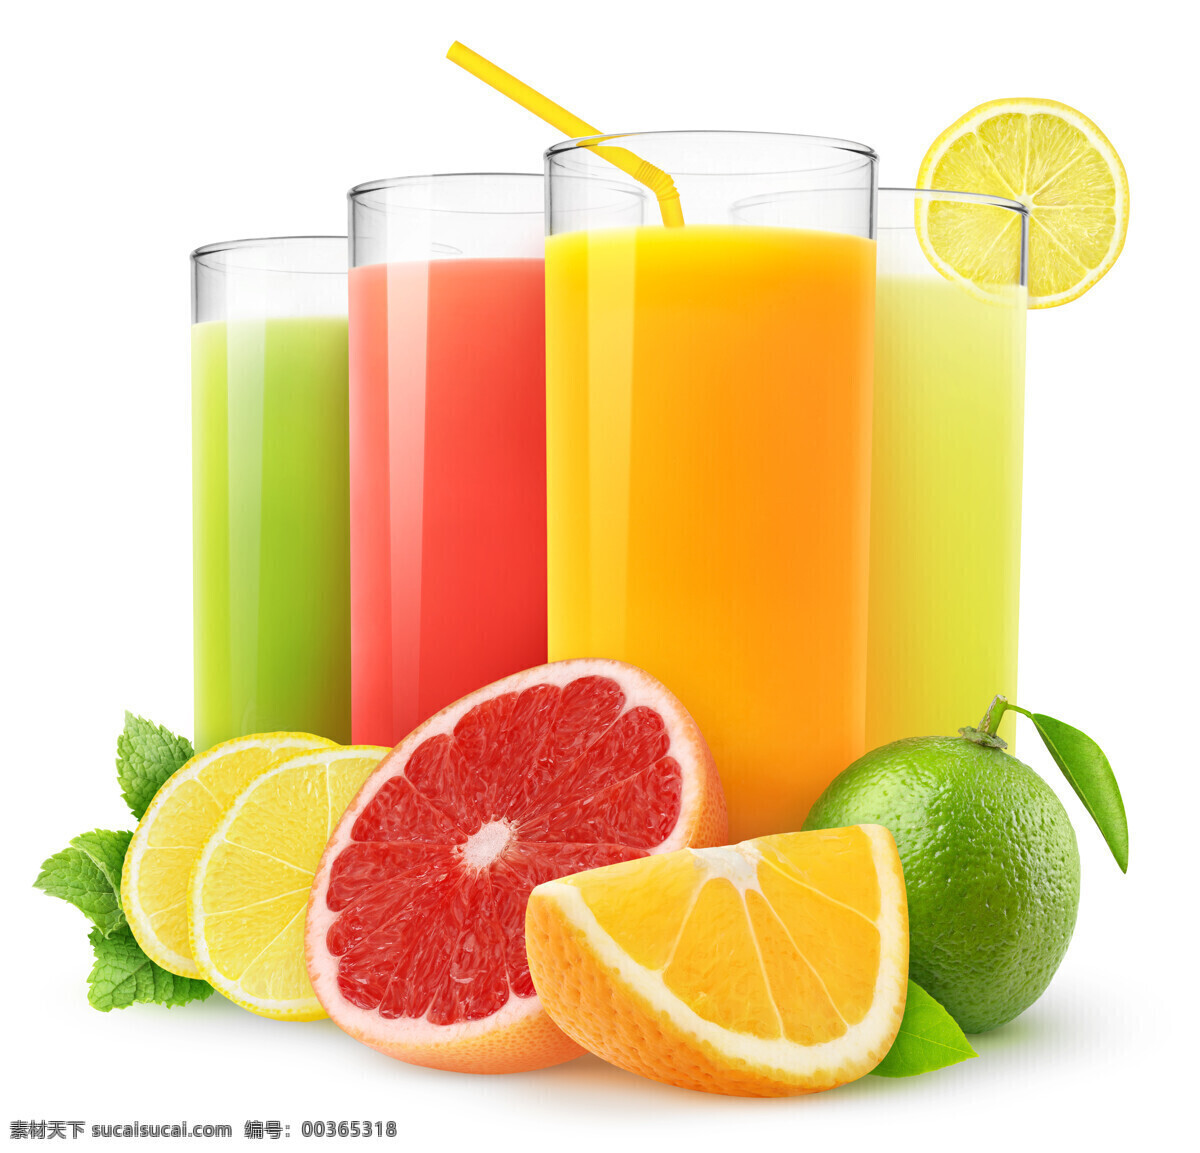 新鲜果汁 水果 美味 橙子 柠檬 新鲜 果汁 餐饮美食 饮料酒水